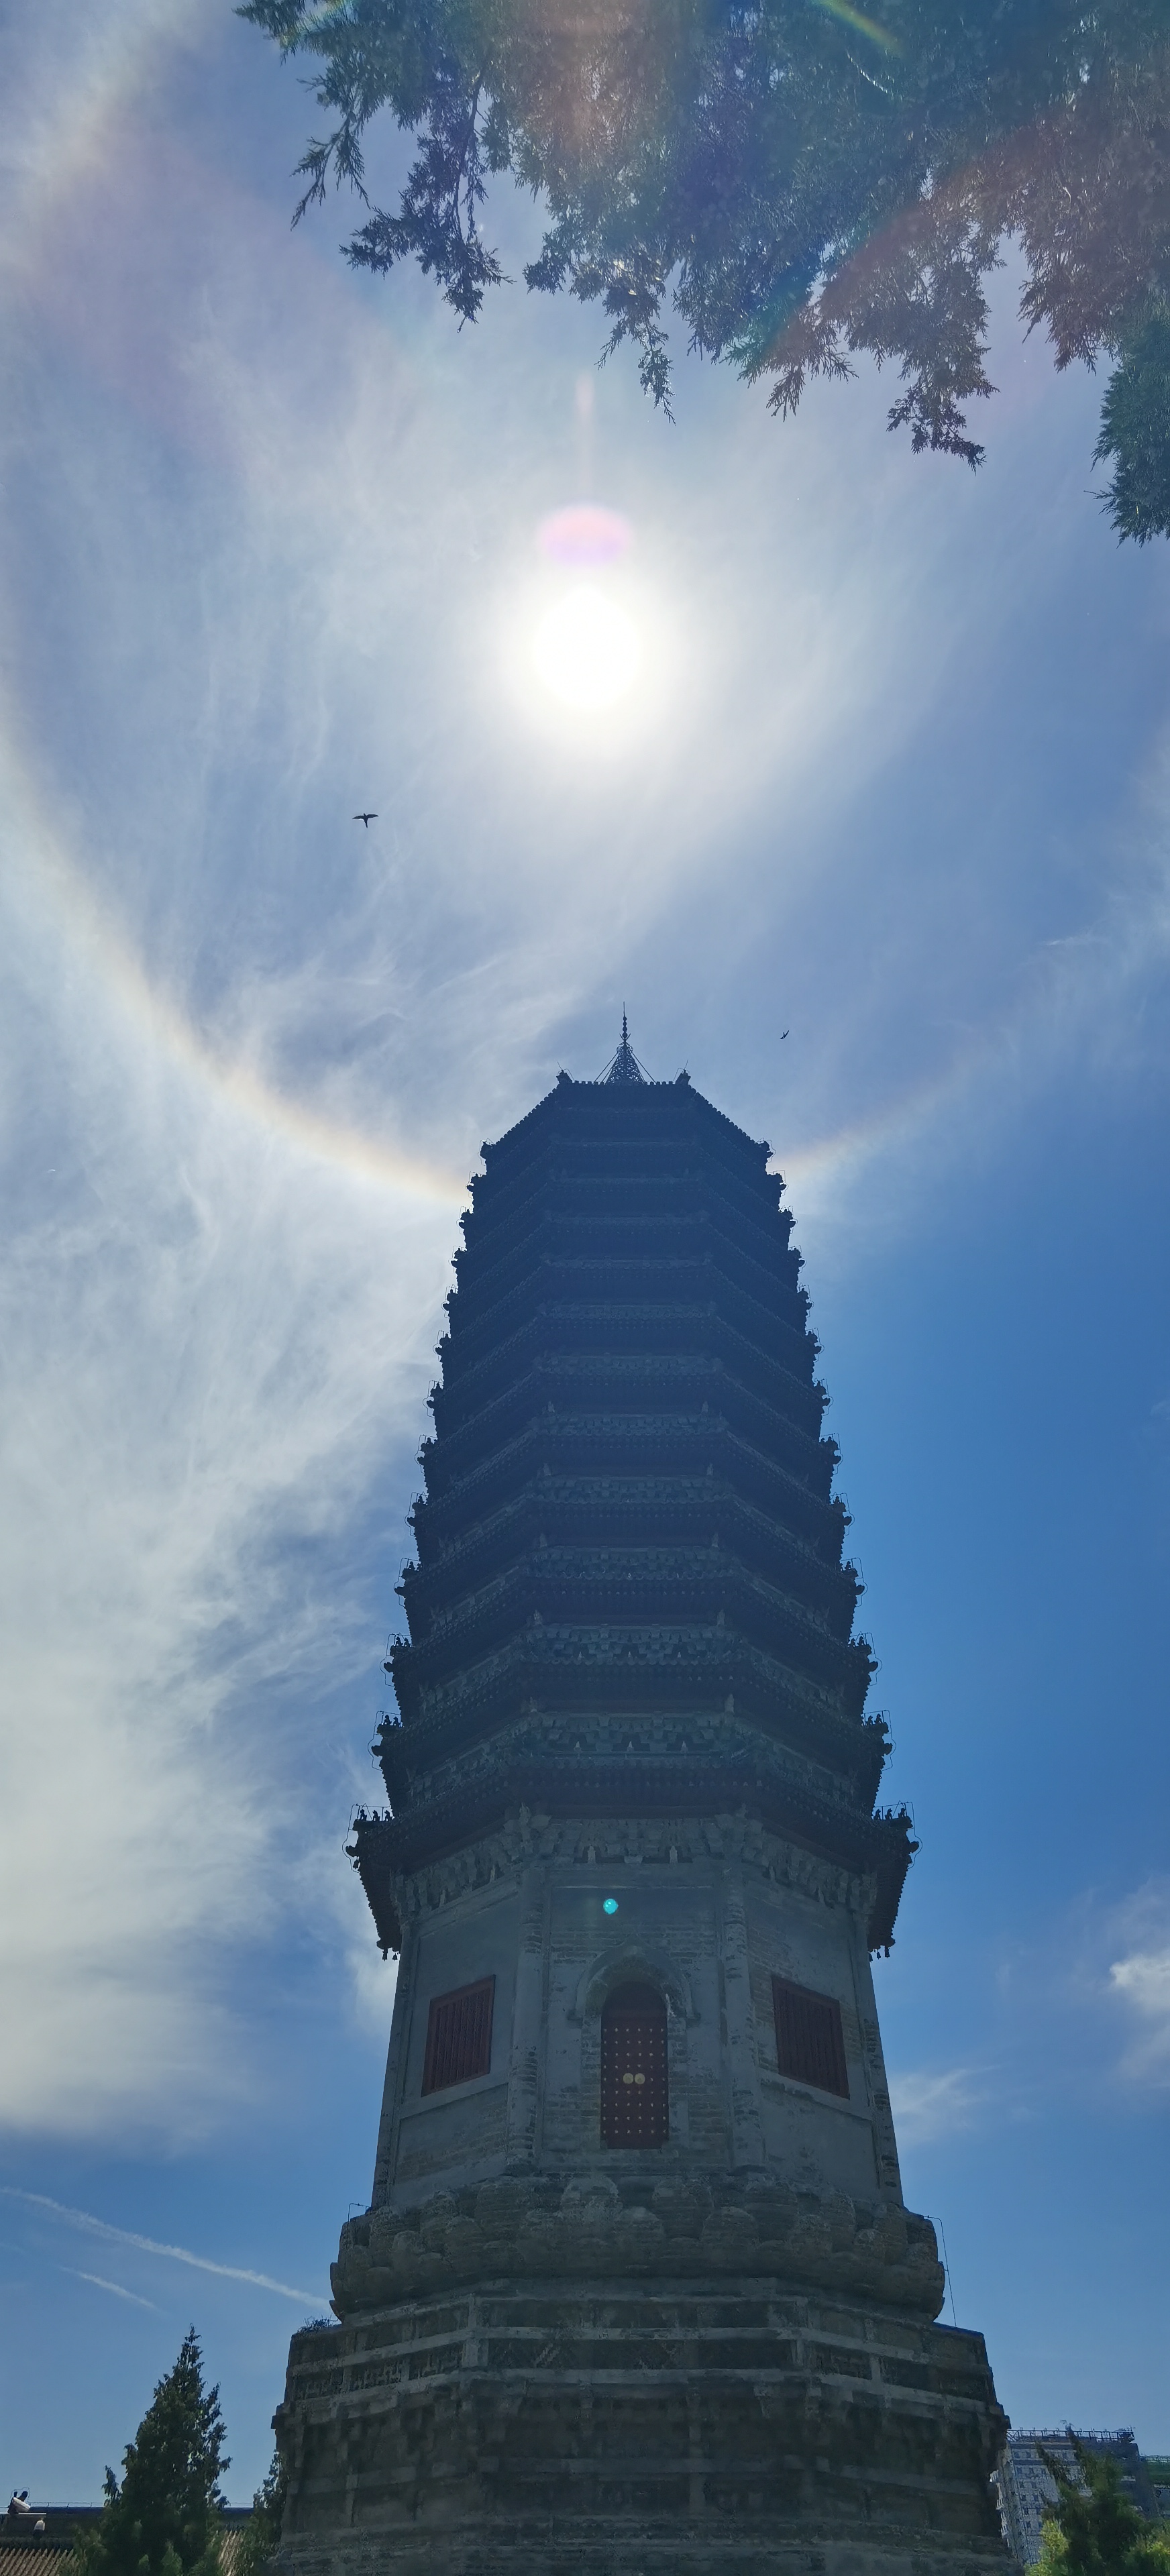 奇观日晕,端午节光环之下的北京城市副中心始建于北周的古老燃灯塔